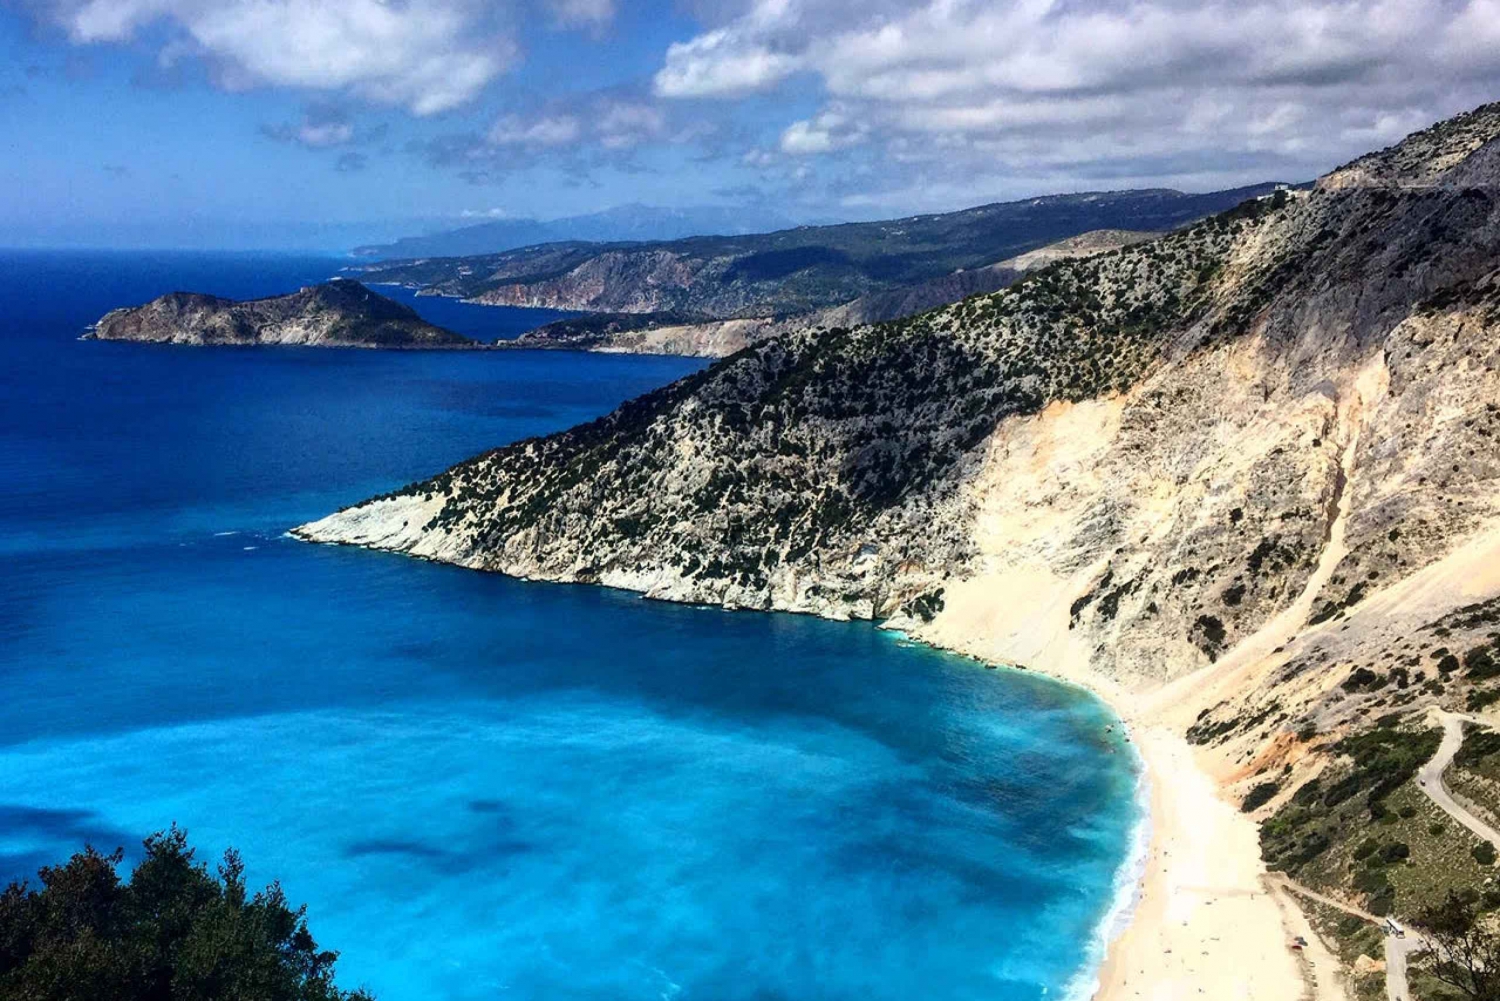 Kefalonia: Tagestour zum Melissani-See, zur Drogarati-Höhle und nach Myrtos